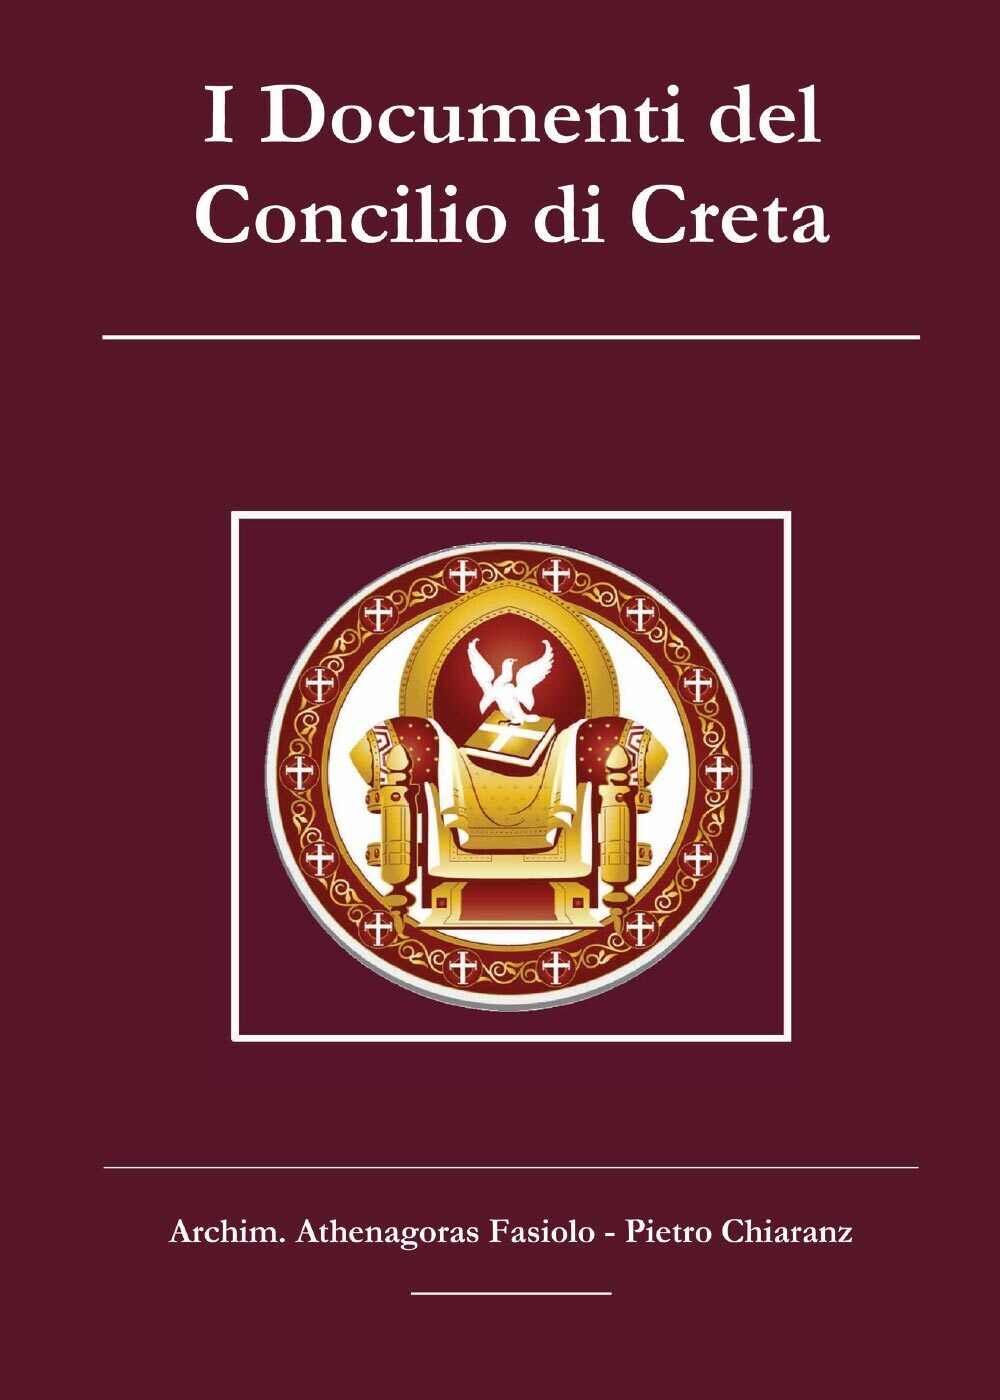 I Documenti del Concilio di Creta, Pietro Chiaranz, Athenagoras Fasiolo, 2017